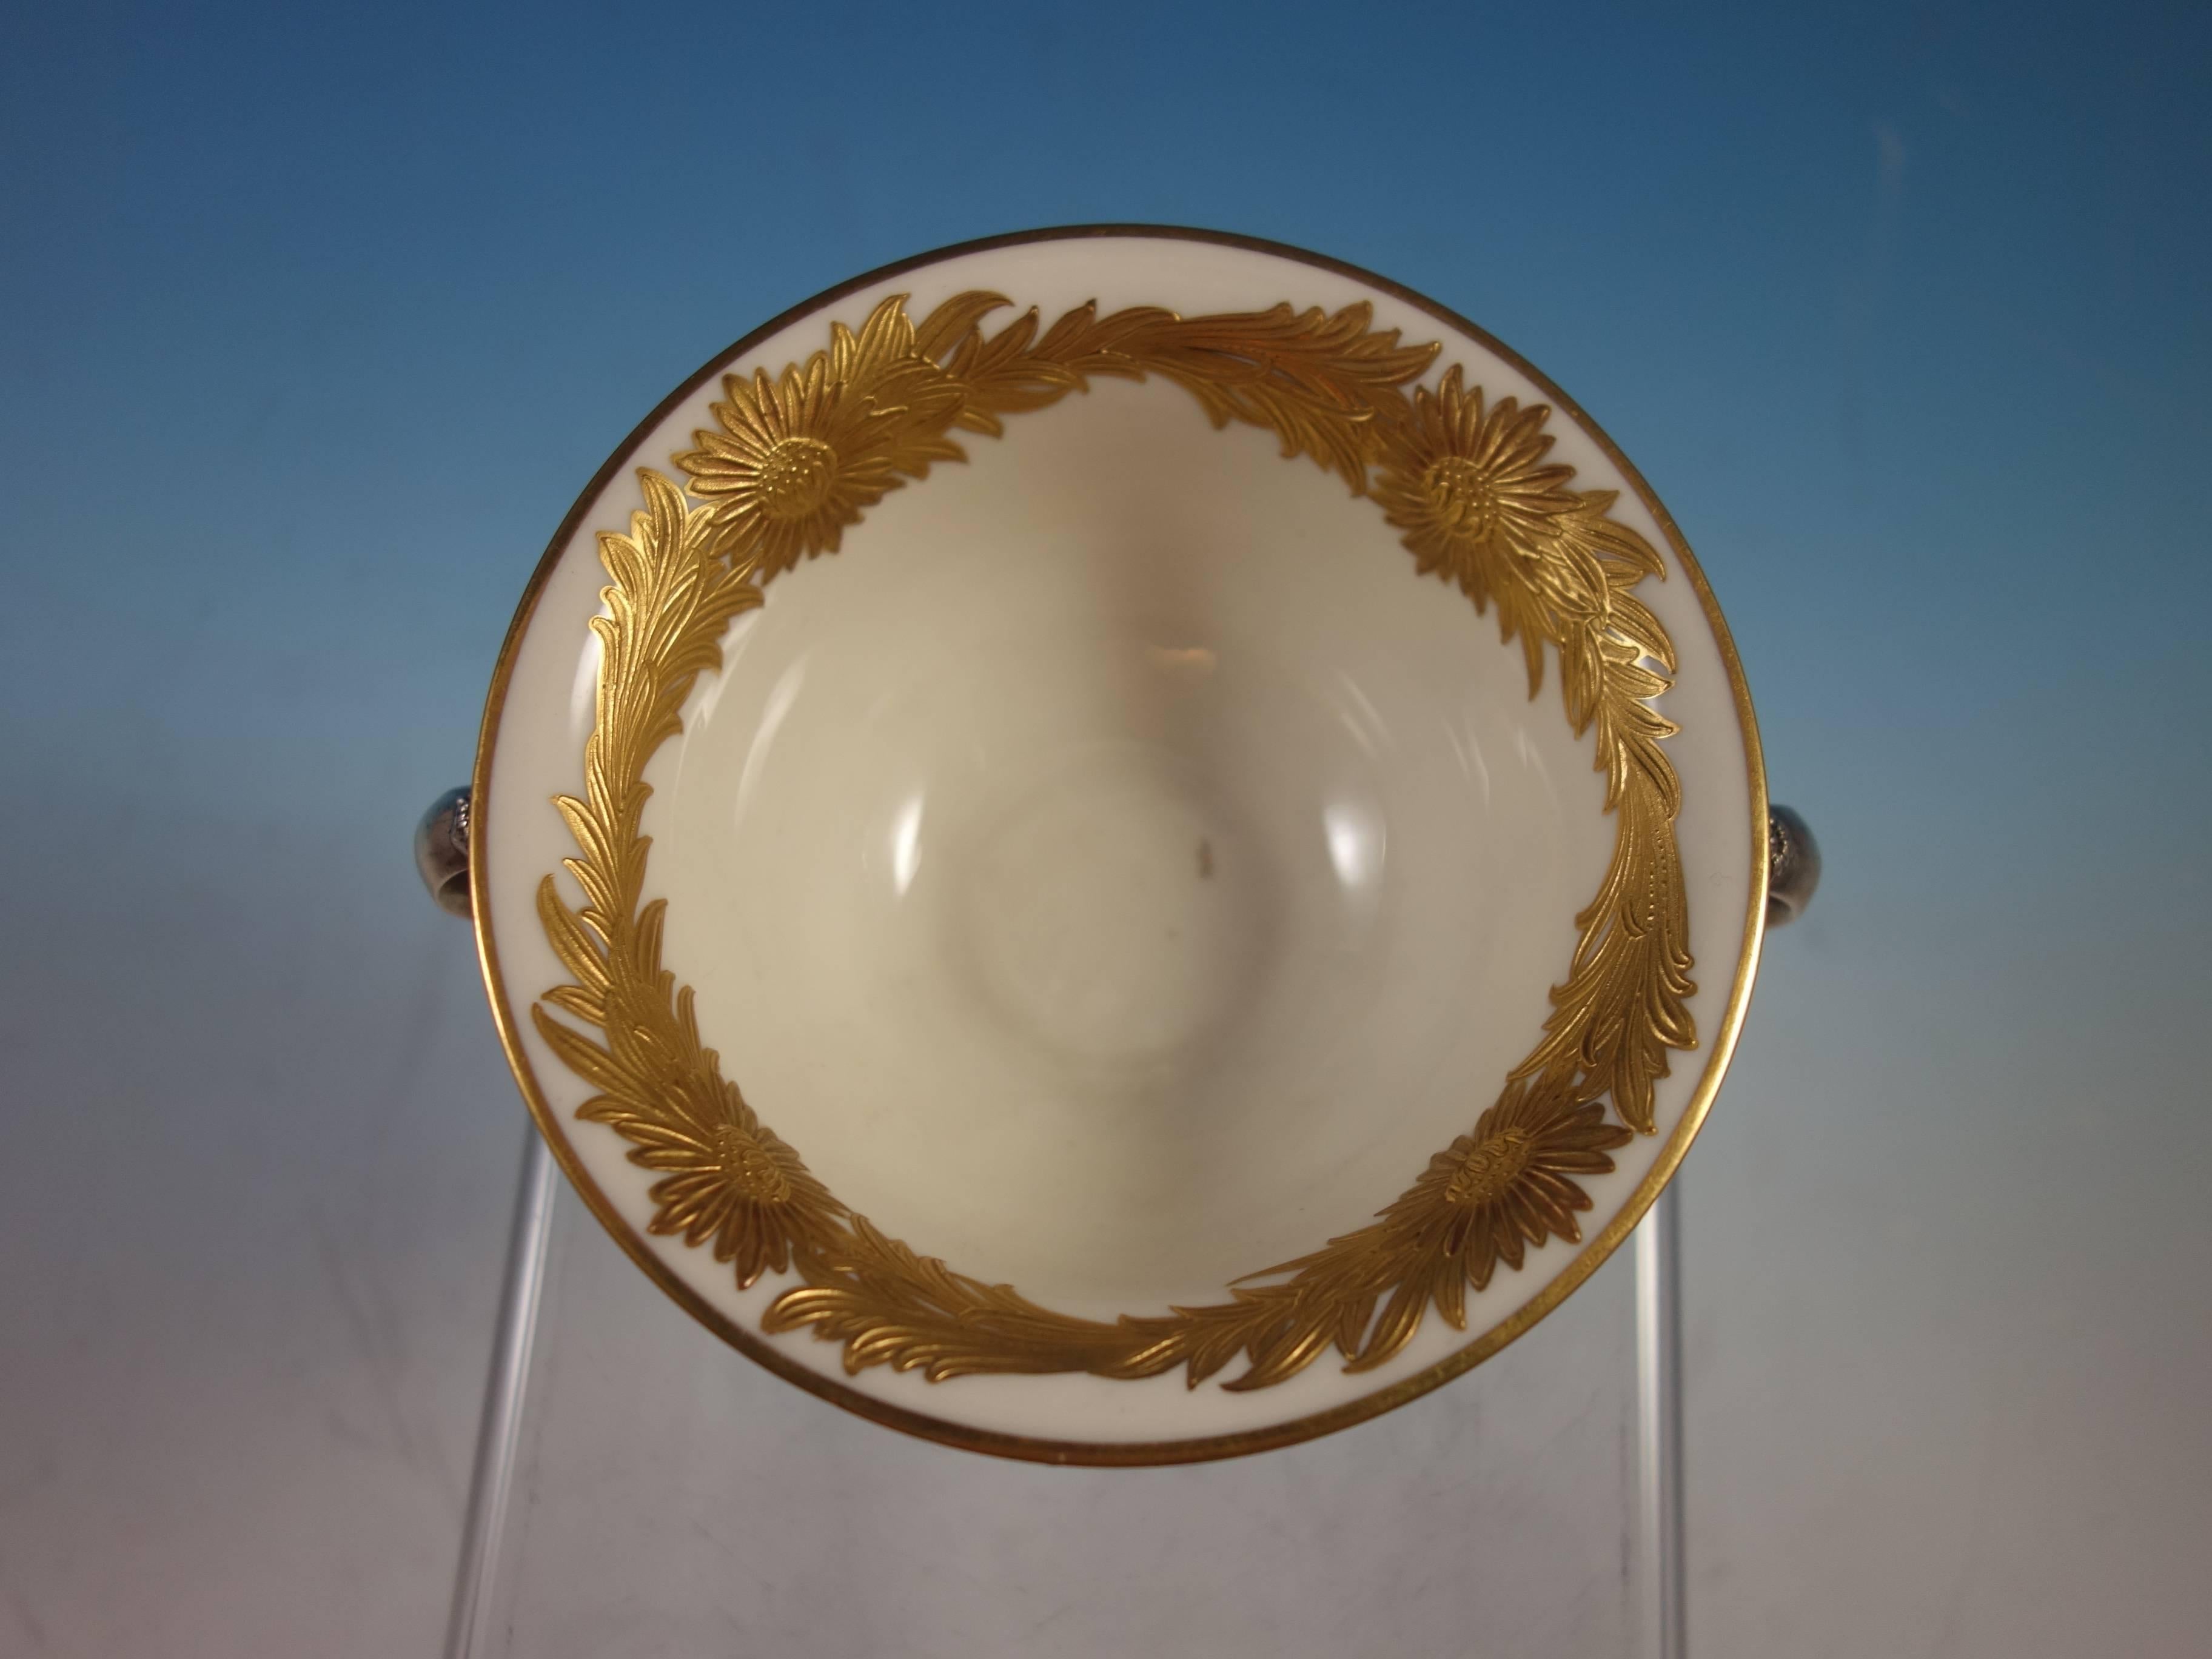 Coupe à bouillon Chrysanthème de Tiffany & Co. en argent sterling avec revêtement en chrysanthème doré. Le gobelet porte le numéro 14782/4848 et la marque de date 